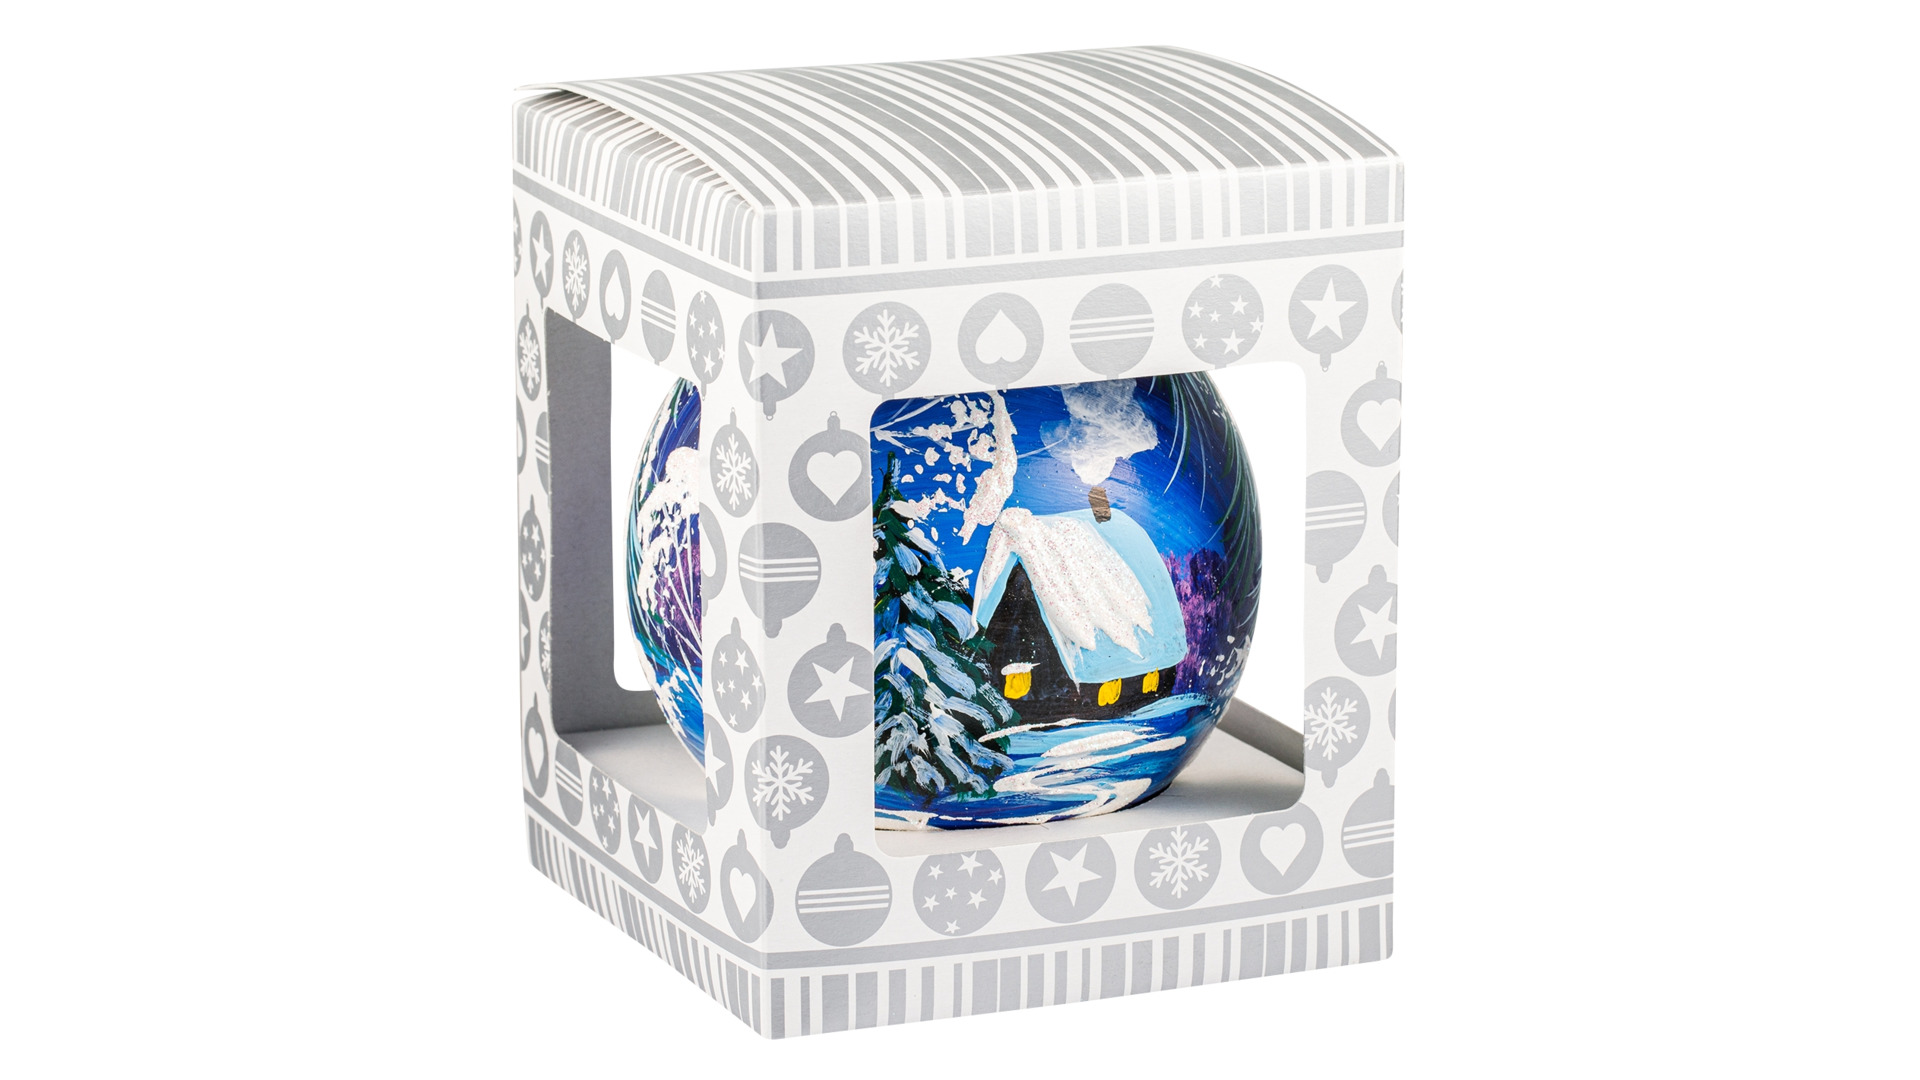 Игрушка елочная шар Bartosh Зимний домик с елью 10см, стекло